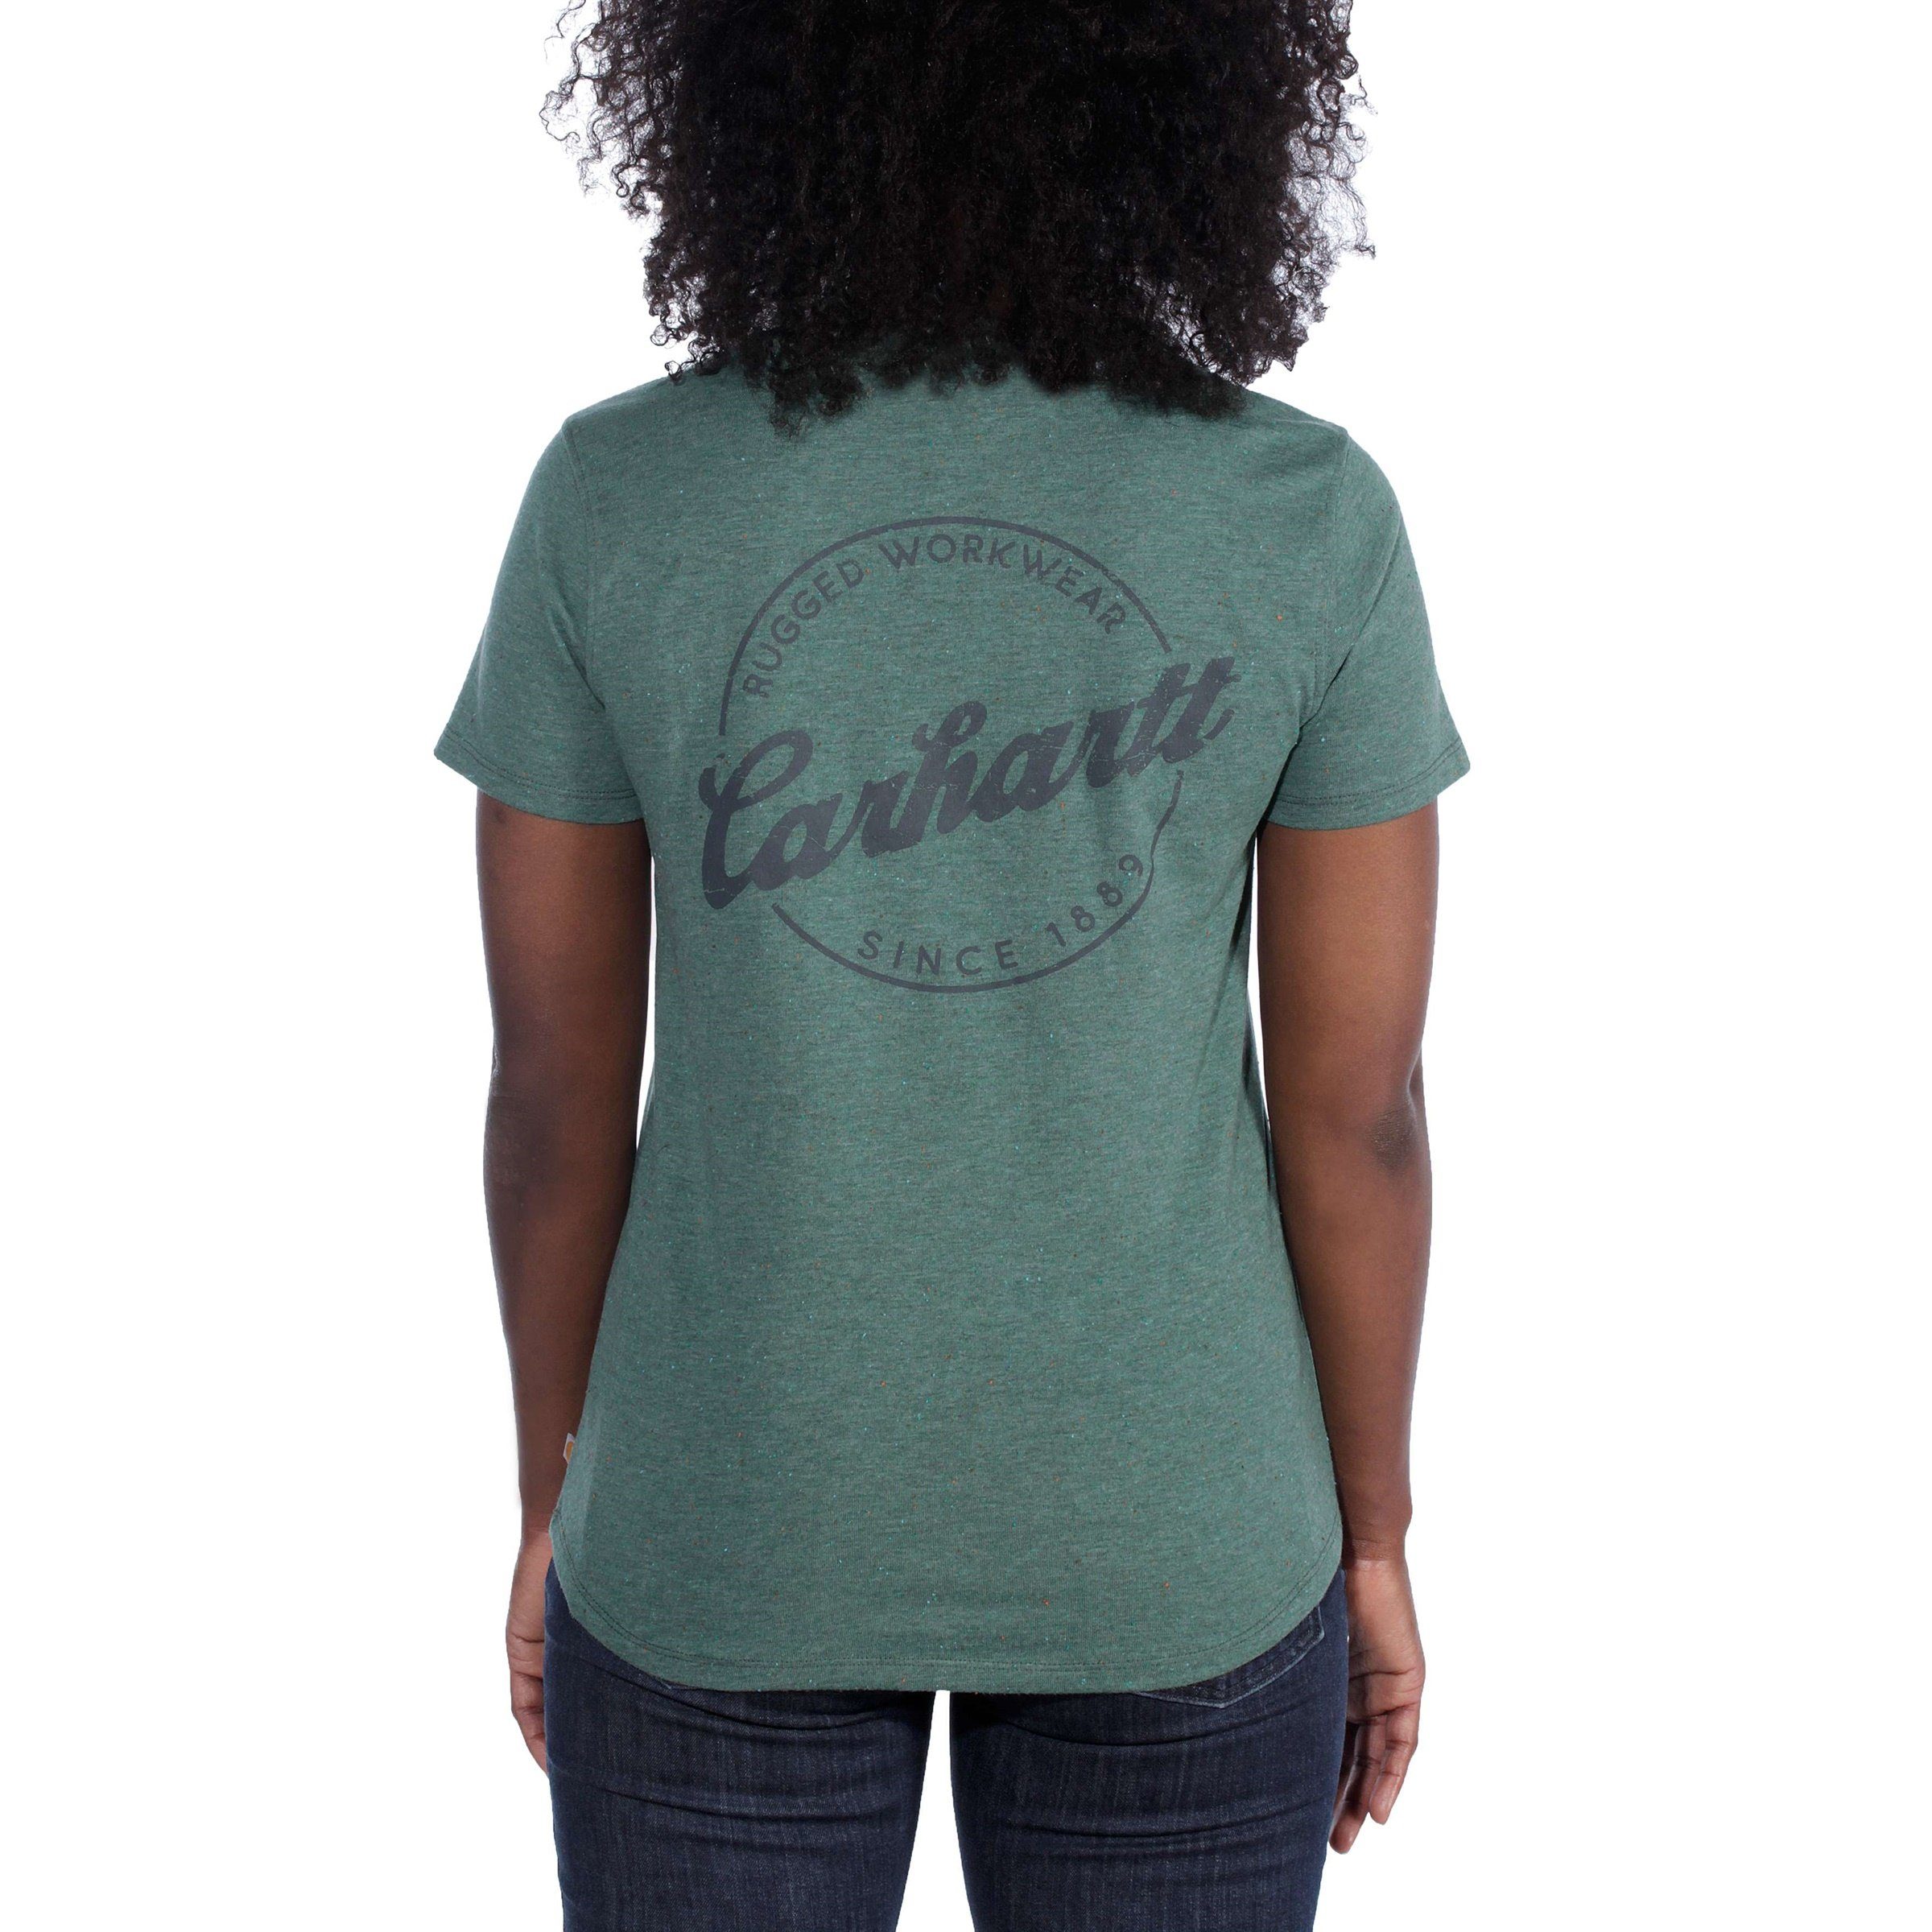 Lockhart Carhartt Damen Carhartt T-Shirt T-Shirt Carhartt green heather nep Adult musk Graphic